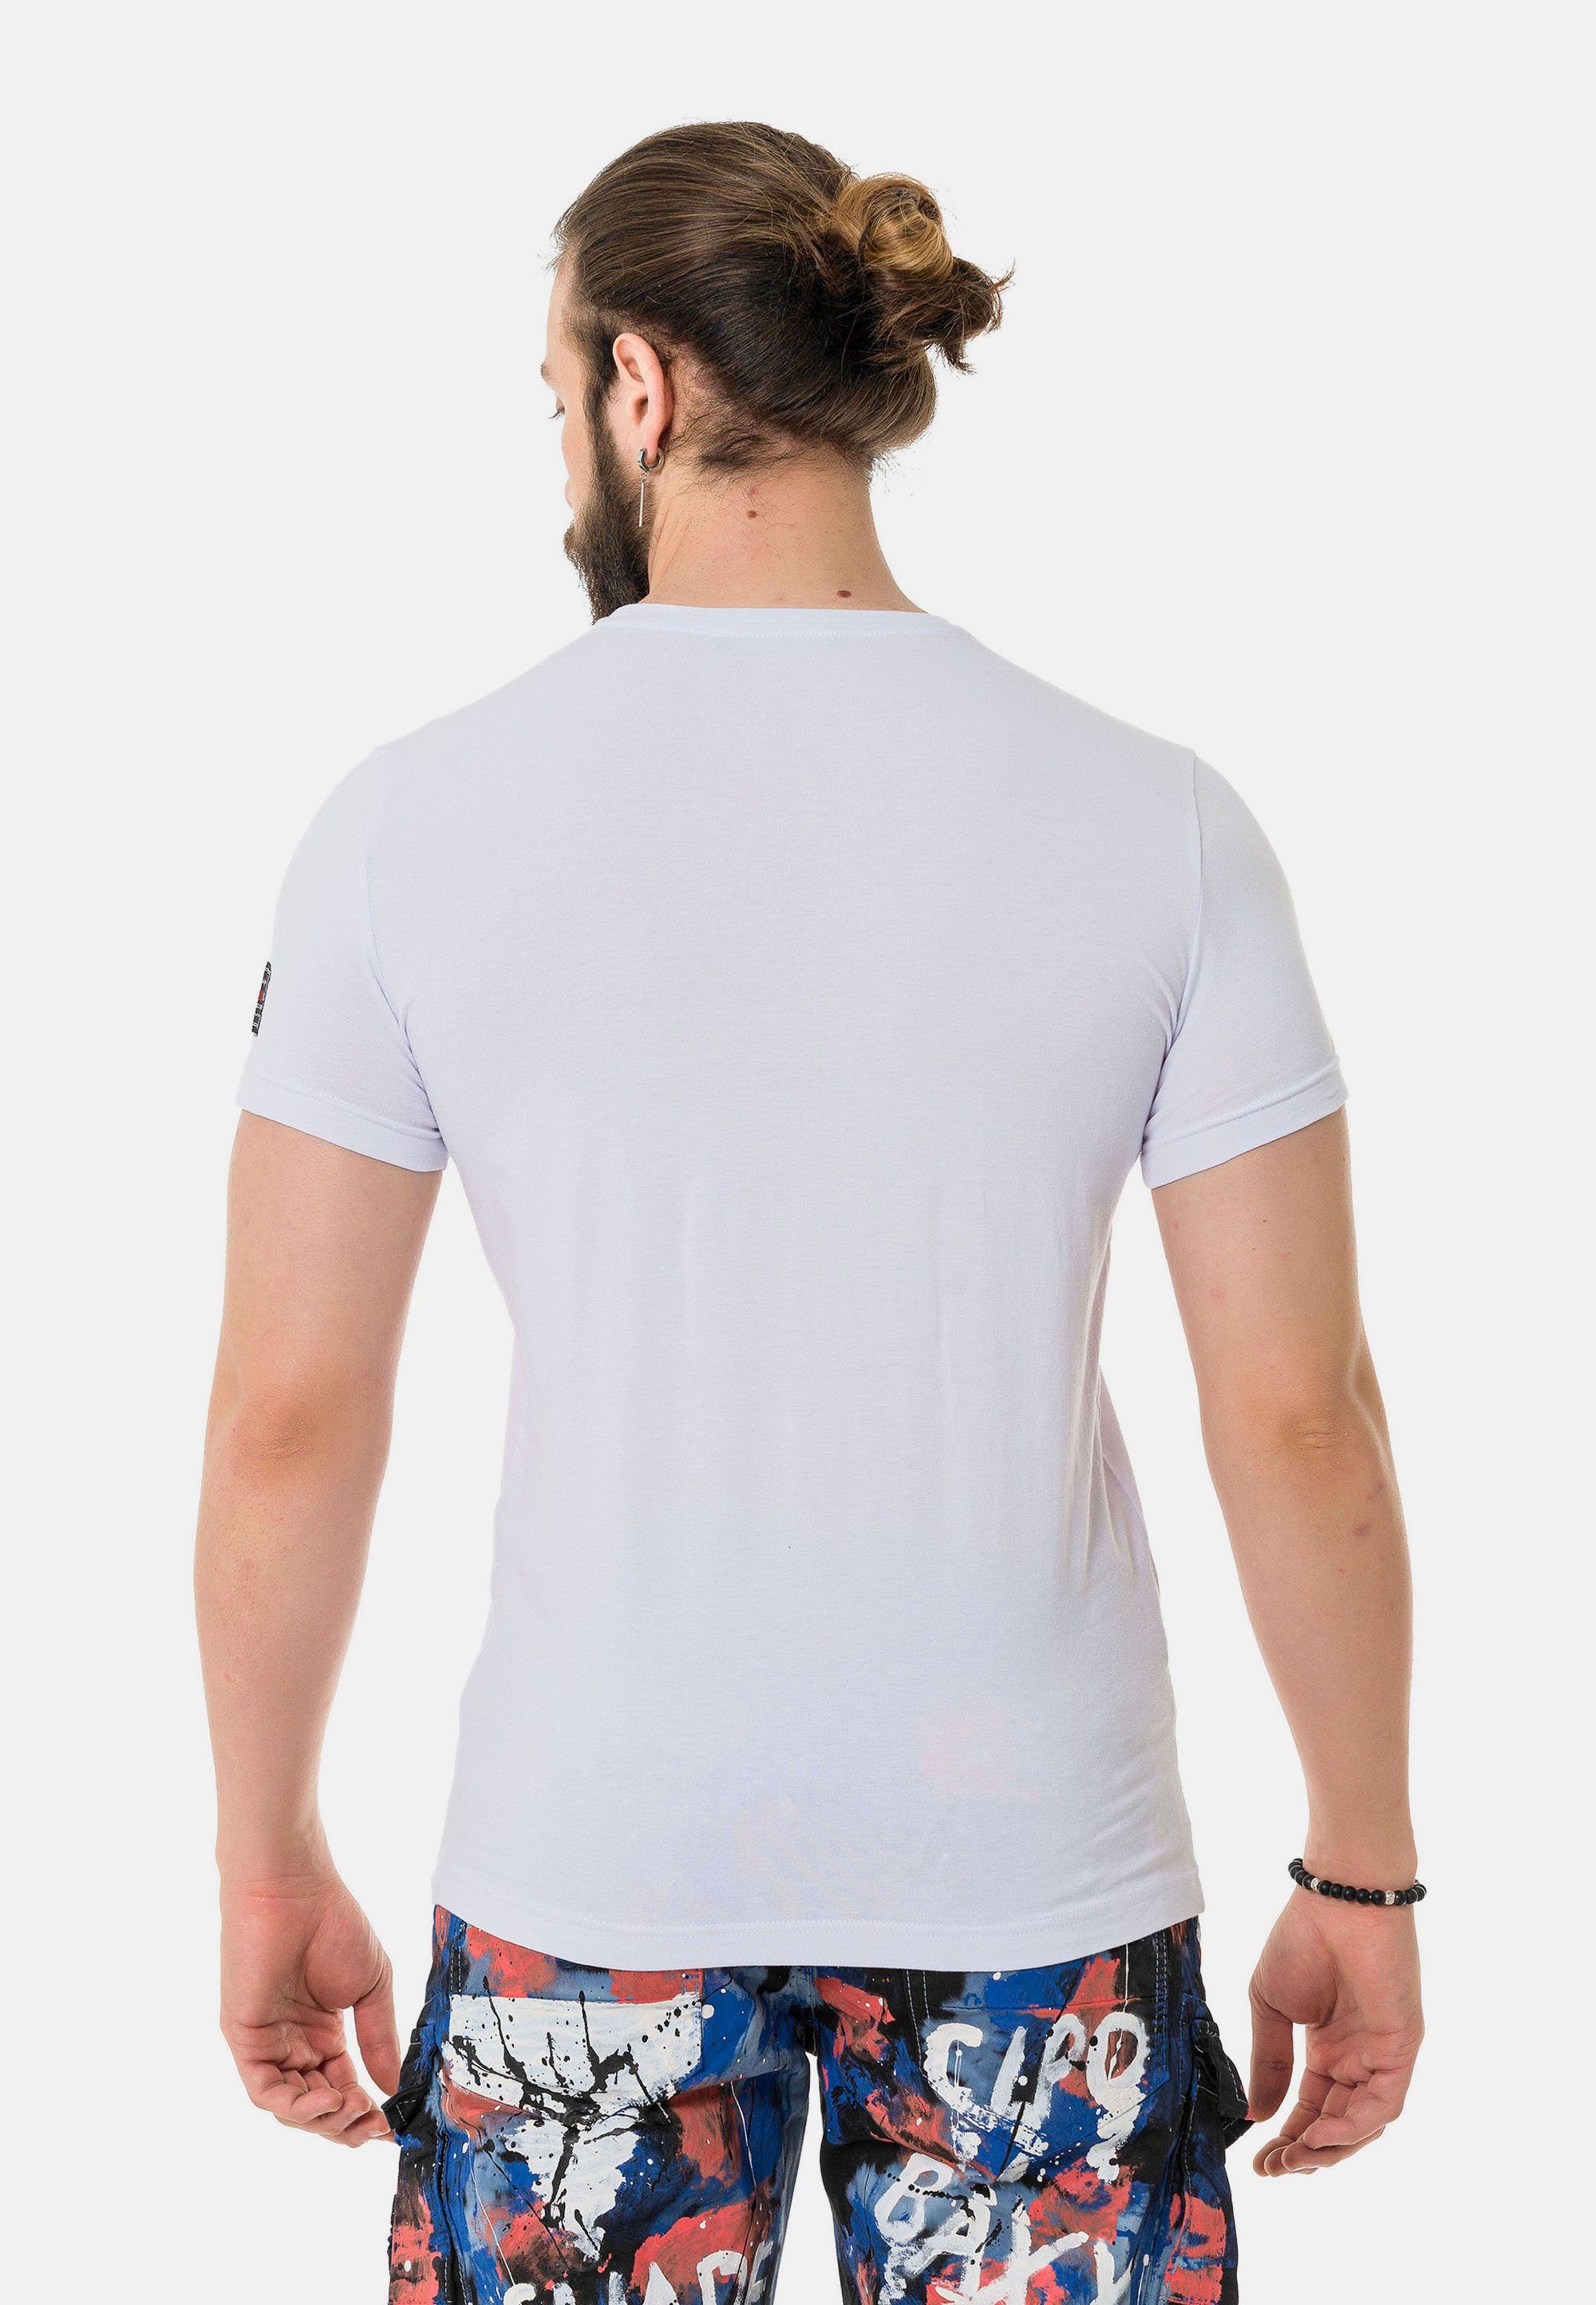 & T-Shirt Cipo Baxx Print coolem mit weiß